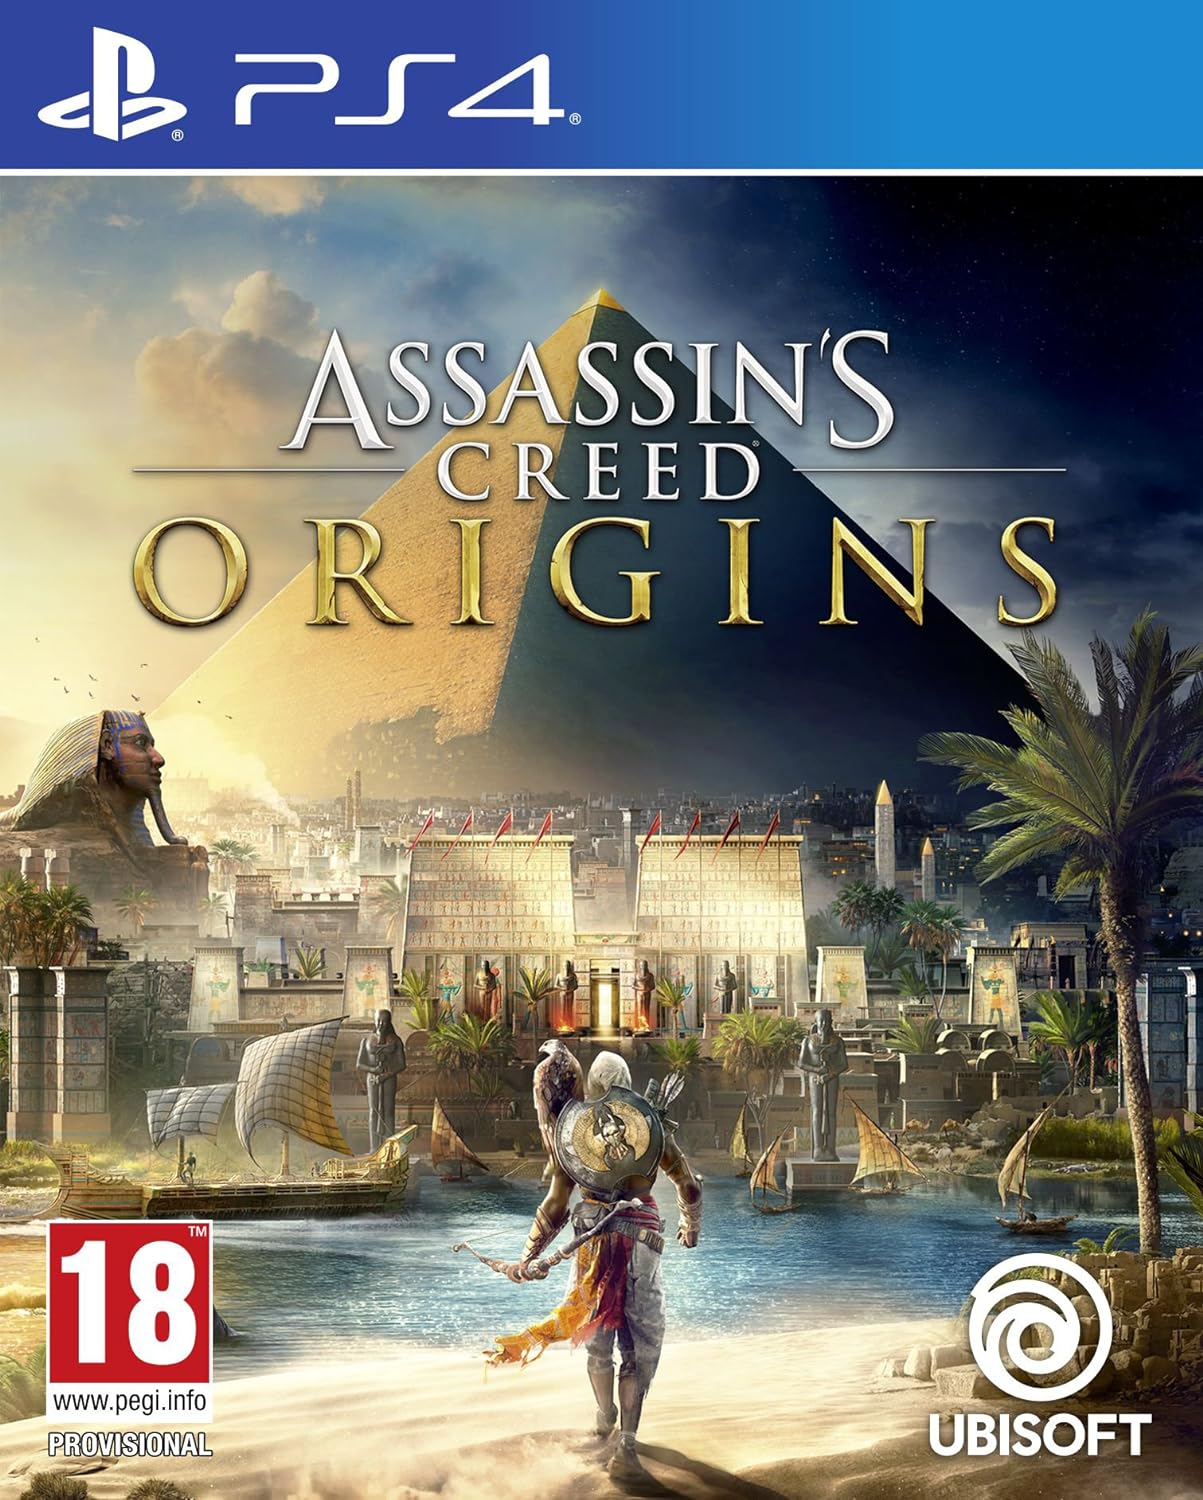 PS4-Assassins-origins-tech-junction-store.